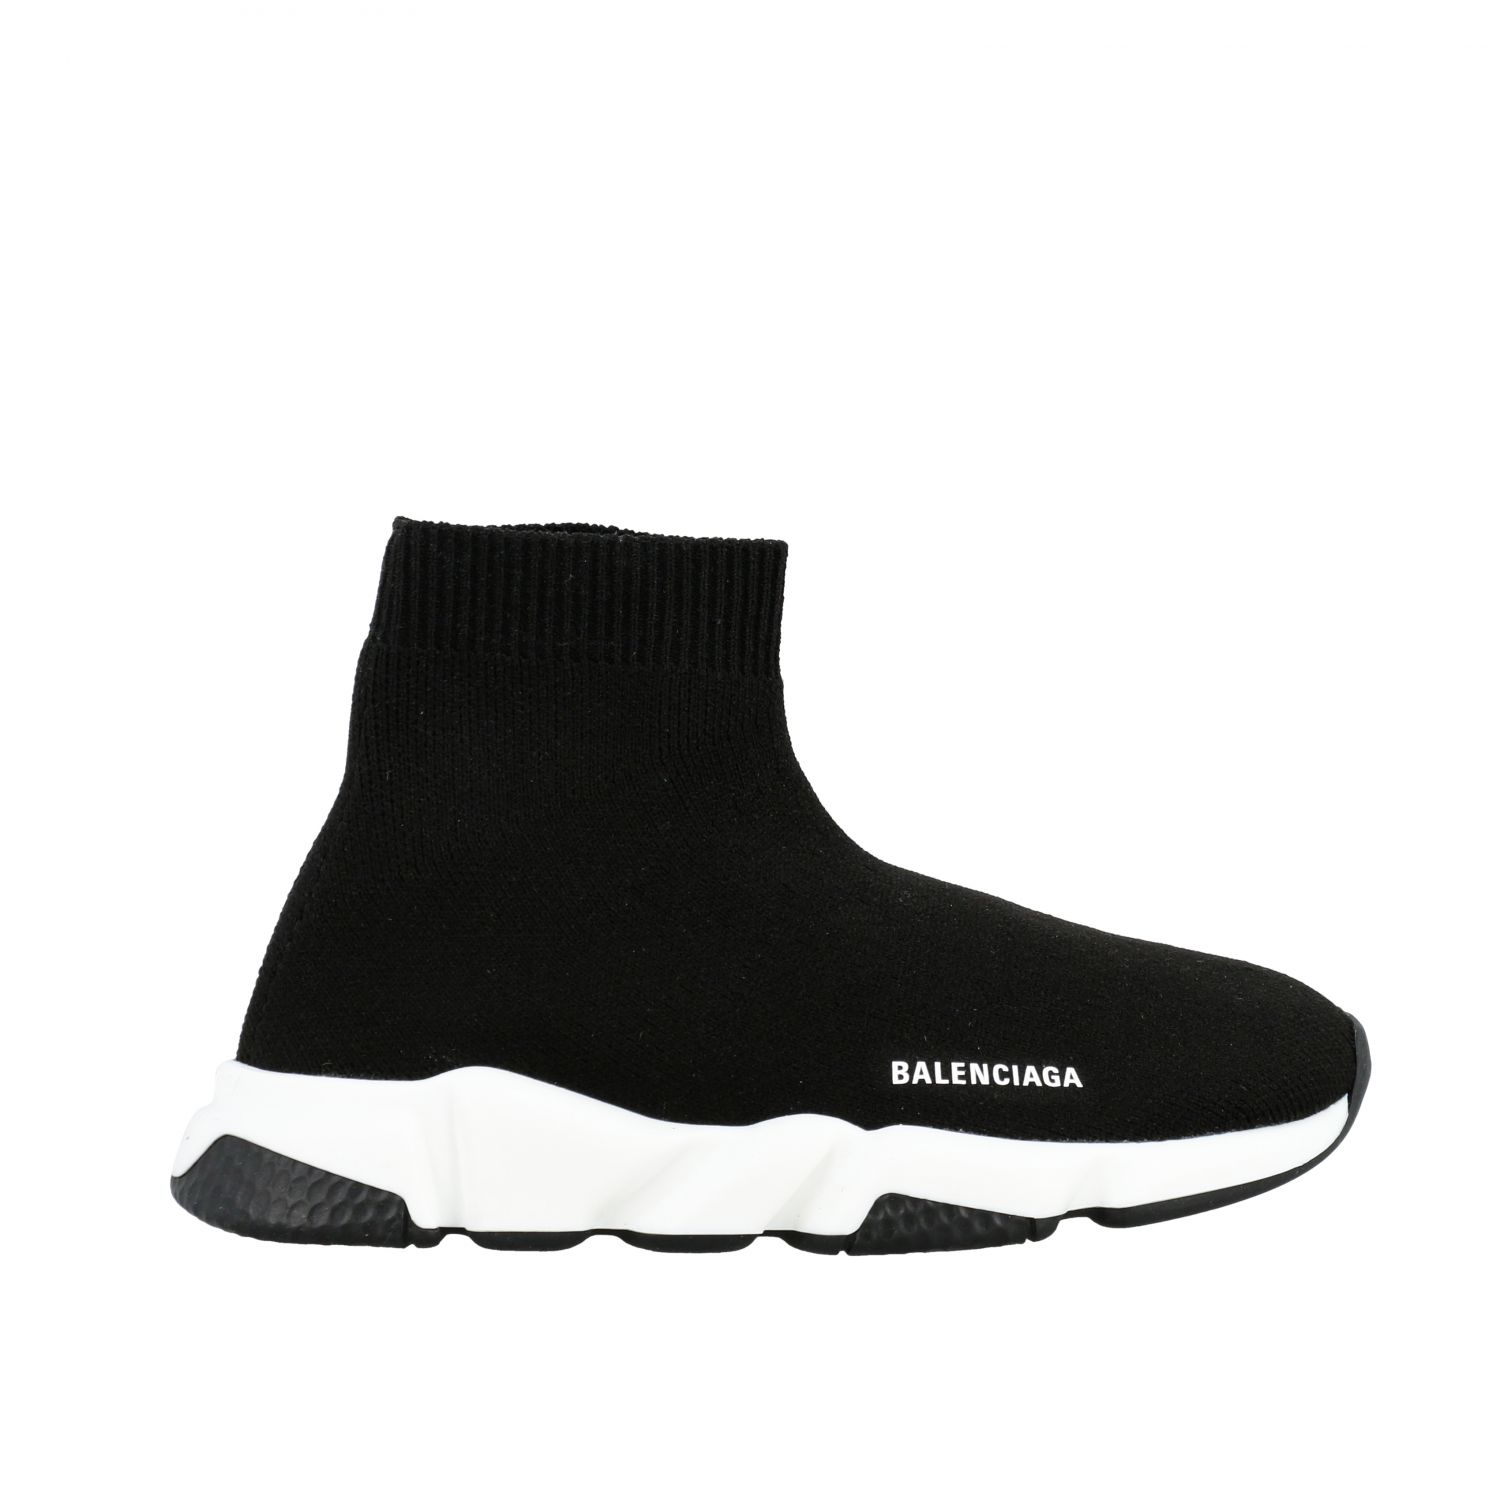 Balenciaga Outlet: Sneakers Speed a calza | Scarpe Balenciaga Bambino Nero  | Scarpe Balenciaga 597425 W1702 GIGLIO.COM